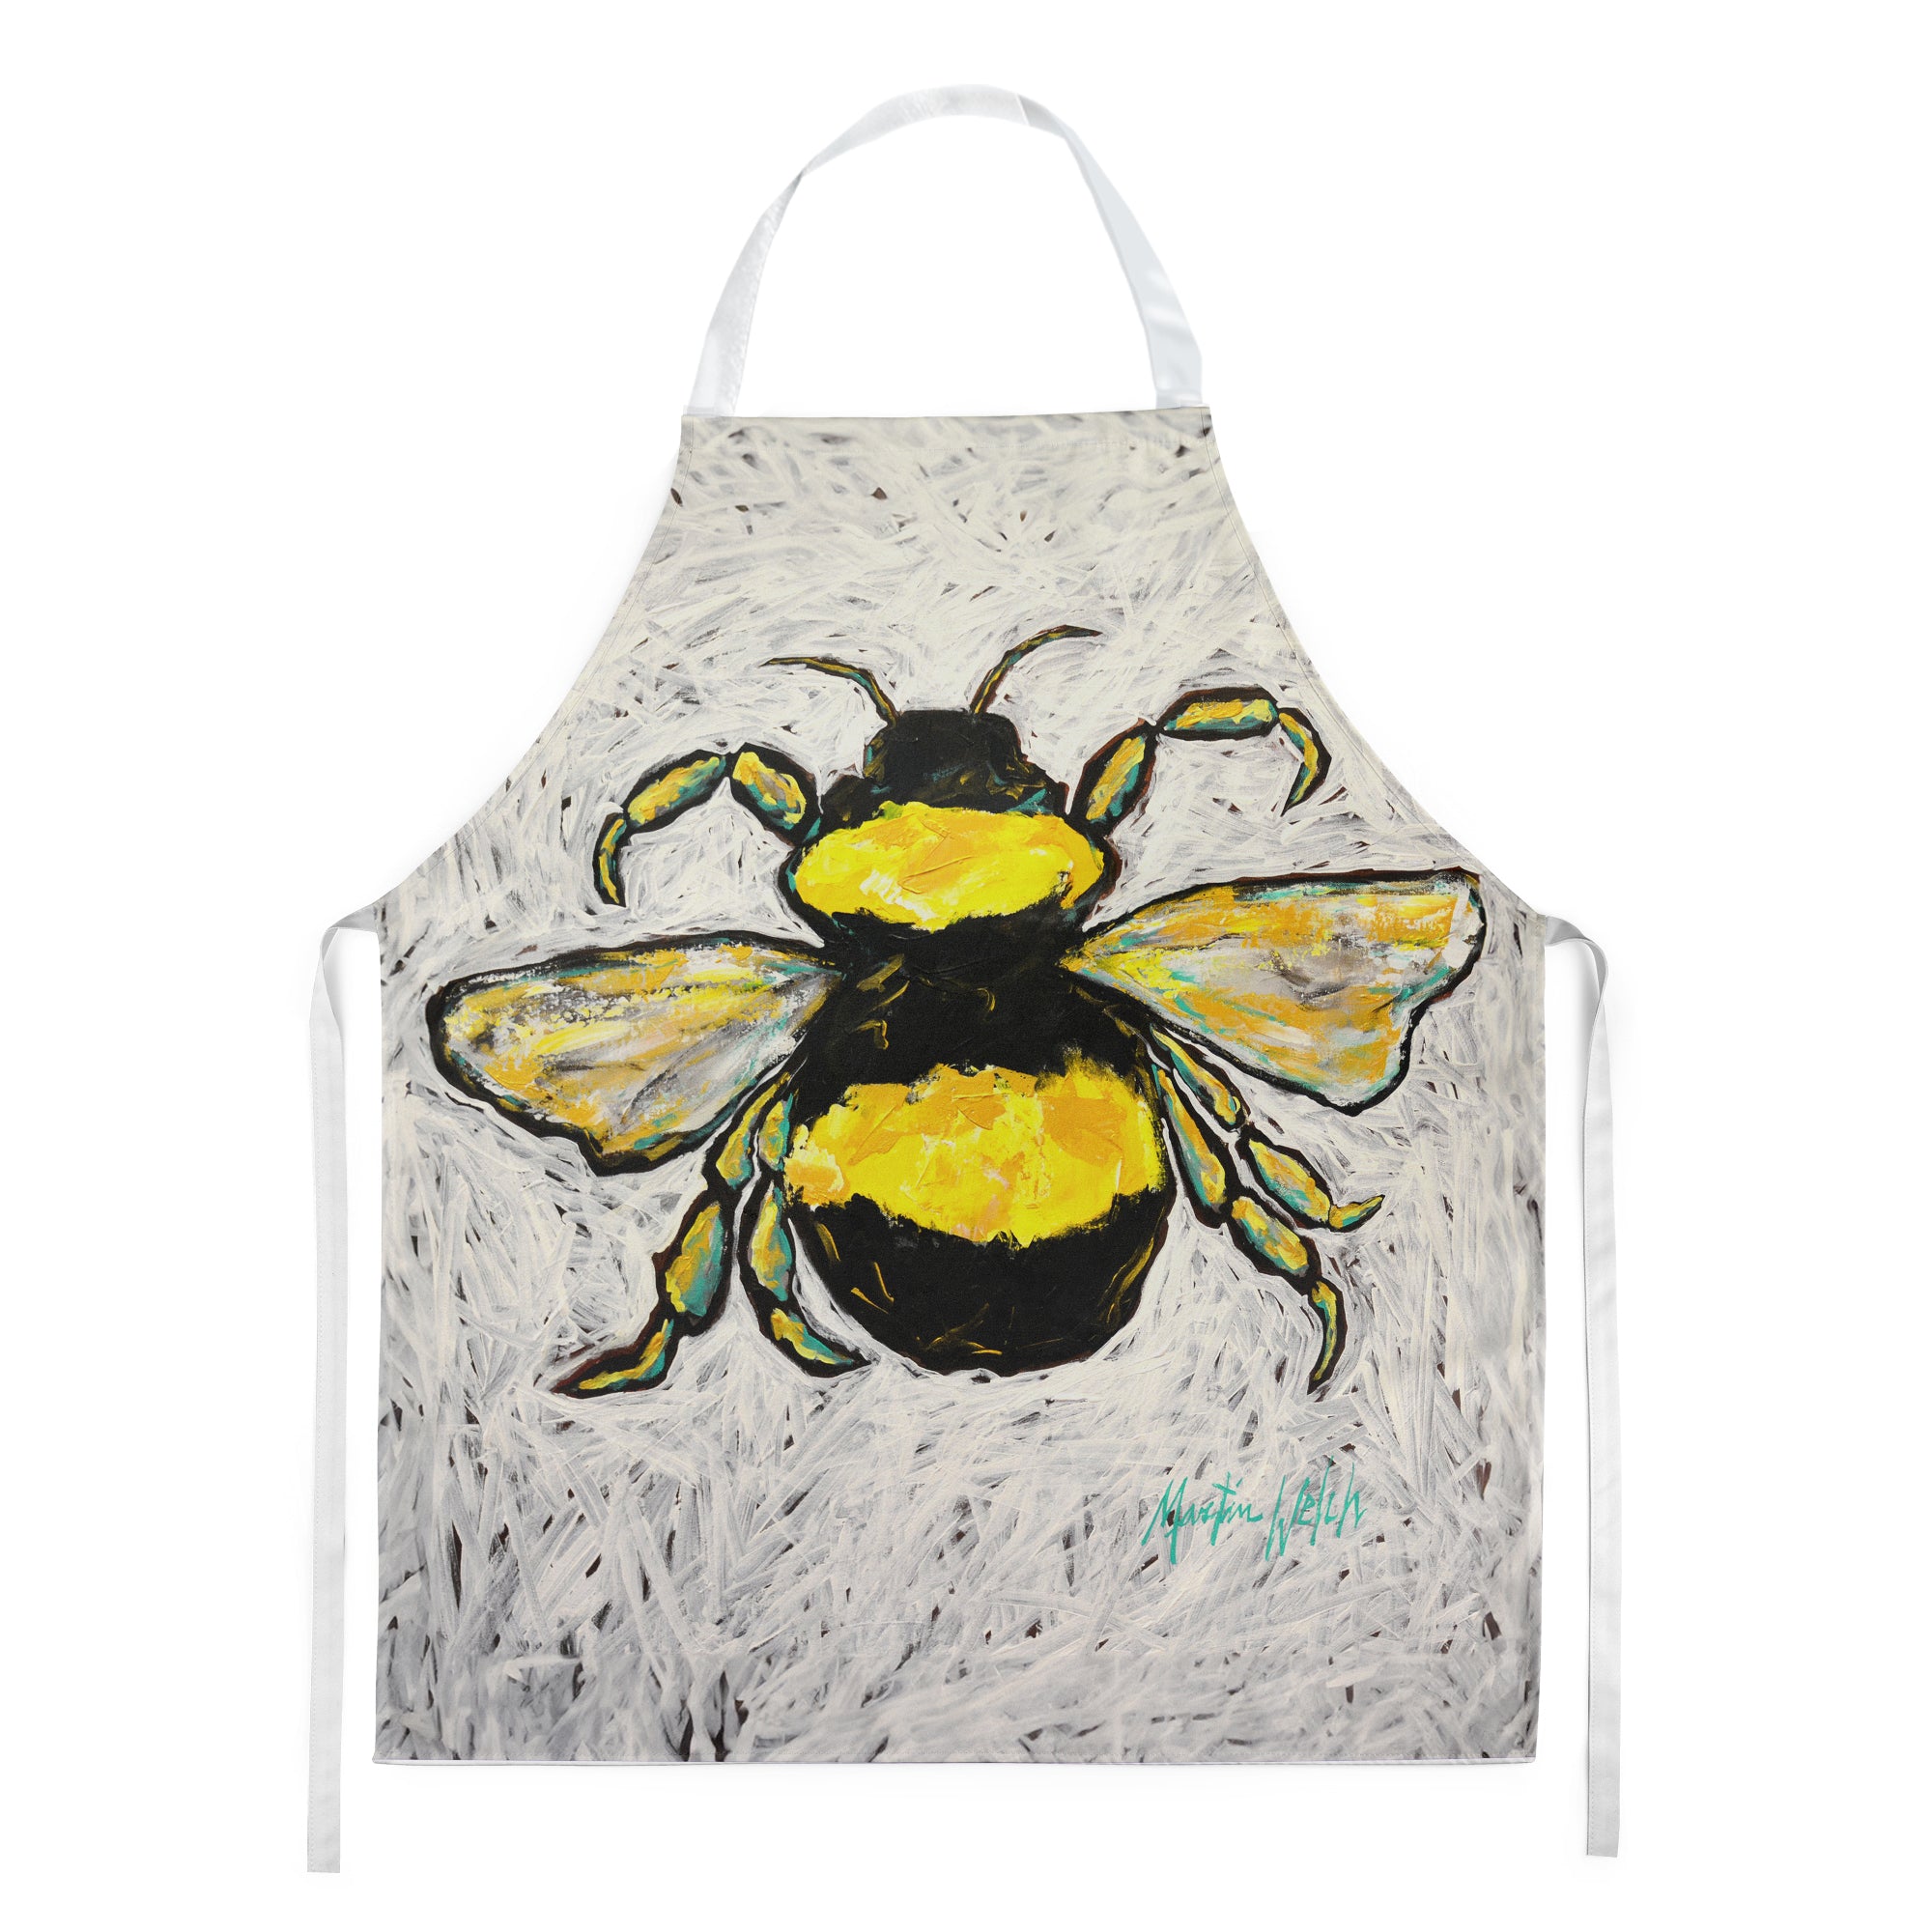 Buy this Buzzbee Bumblebee Apron